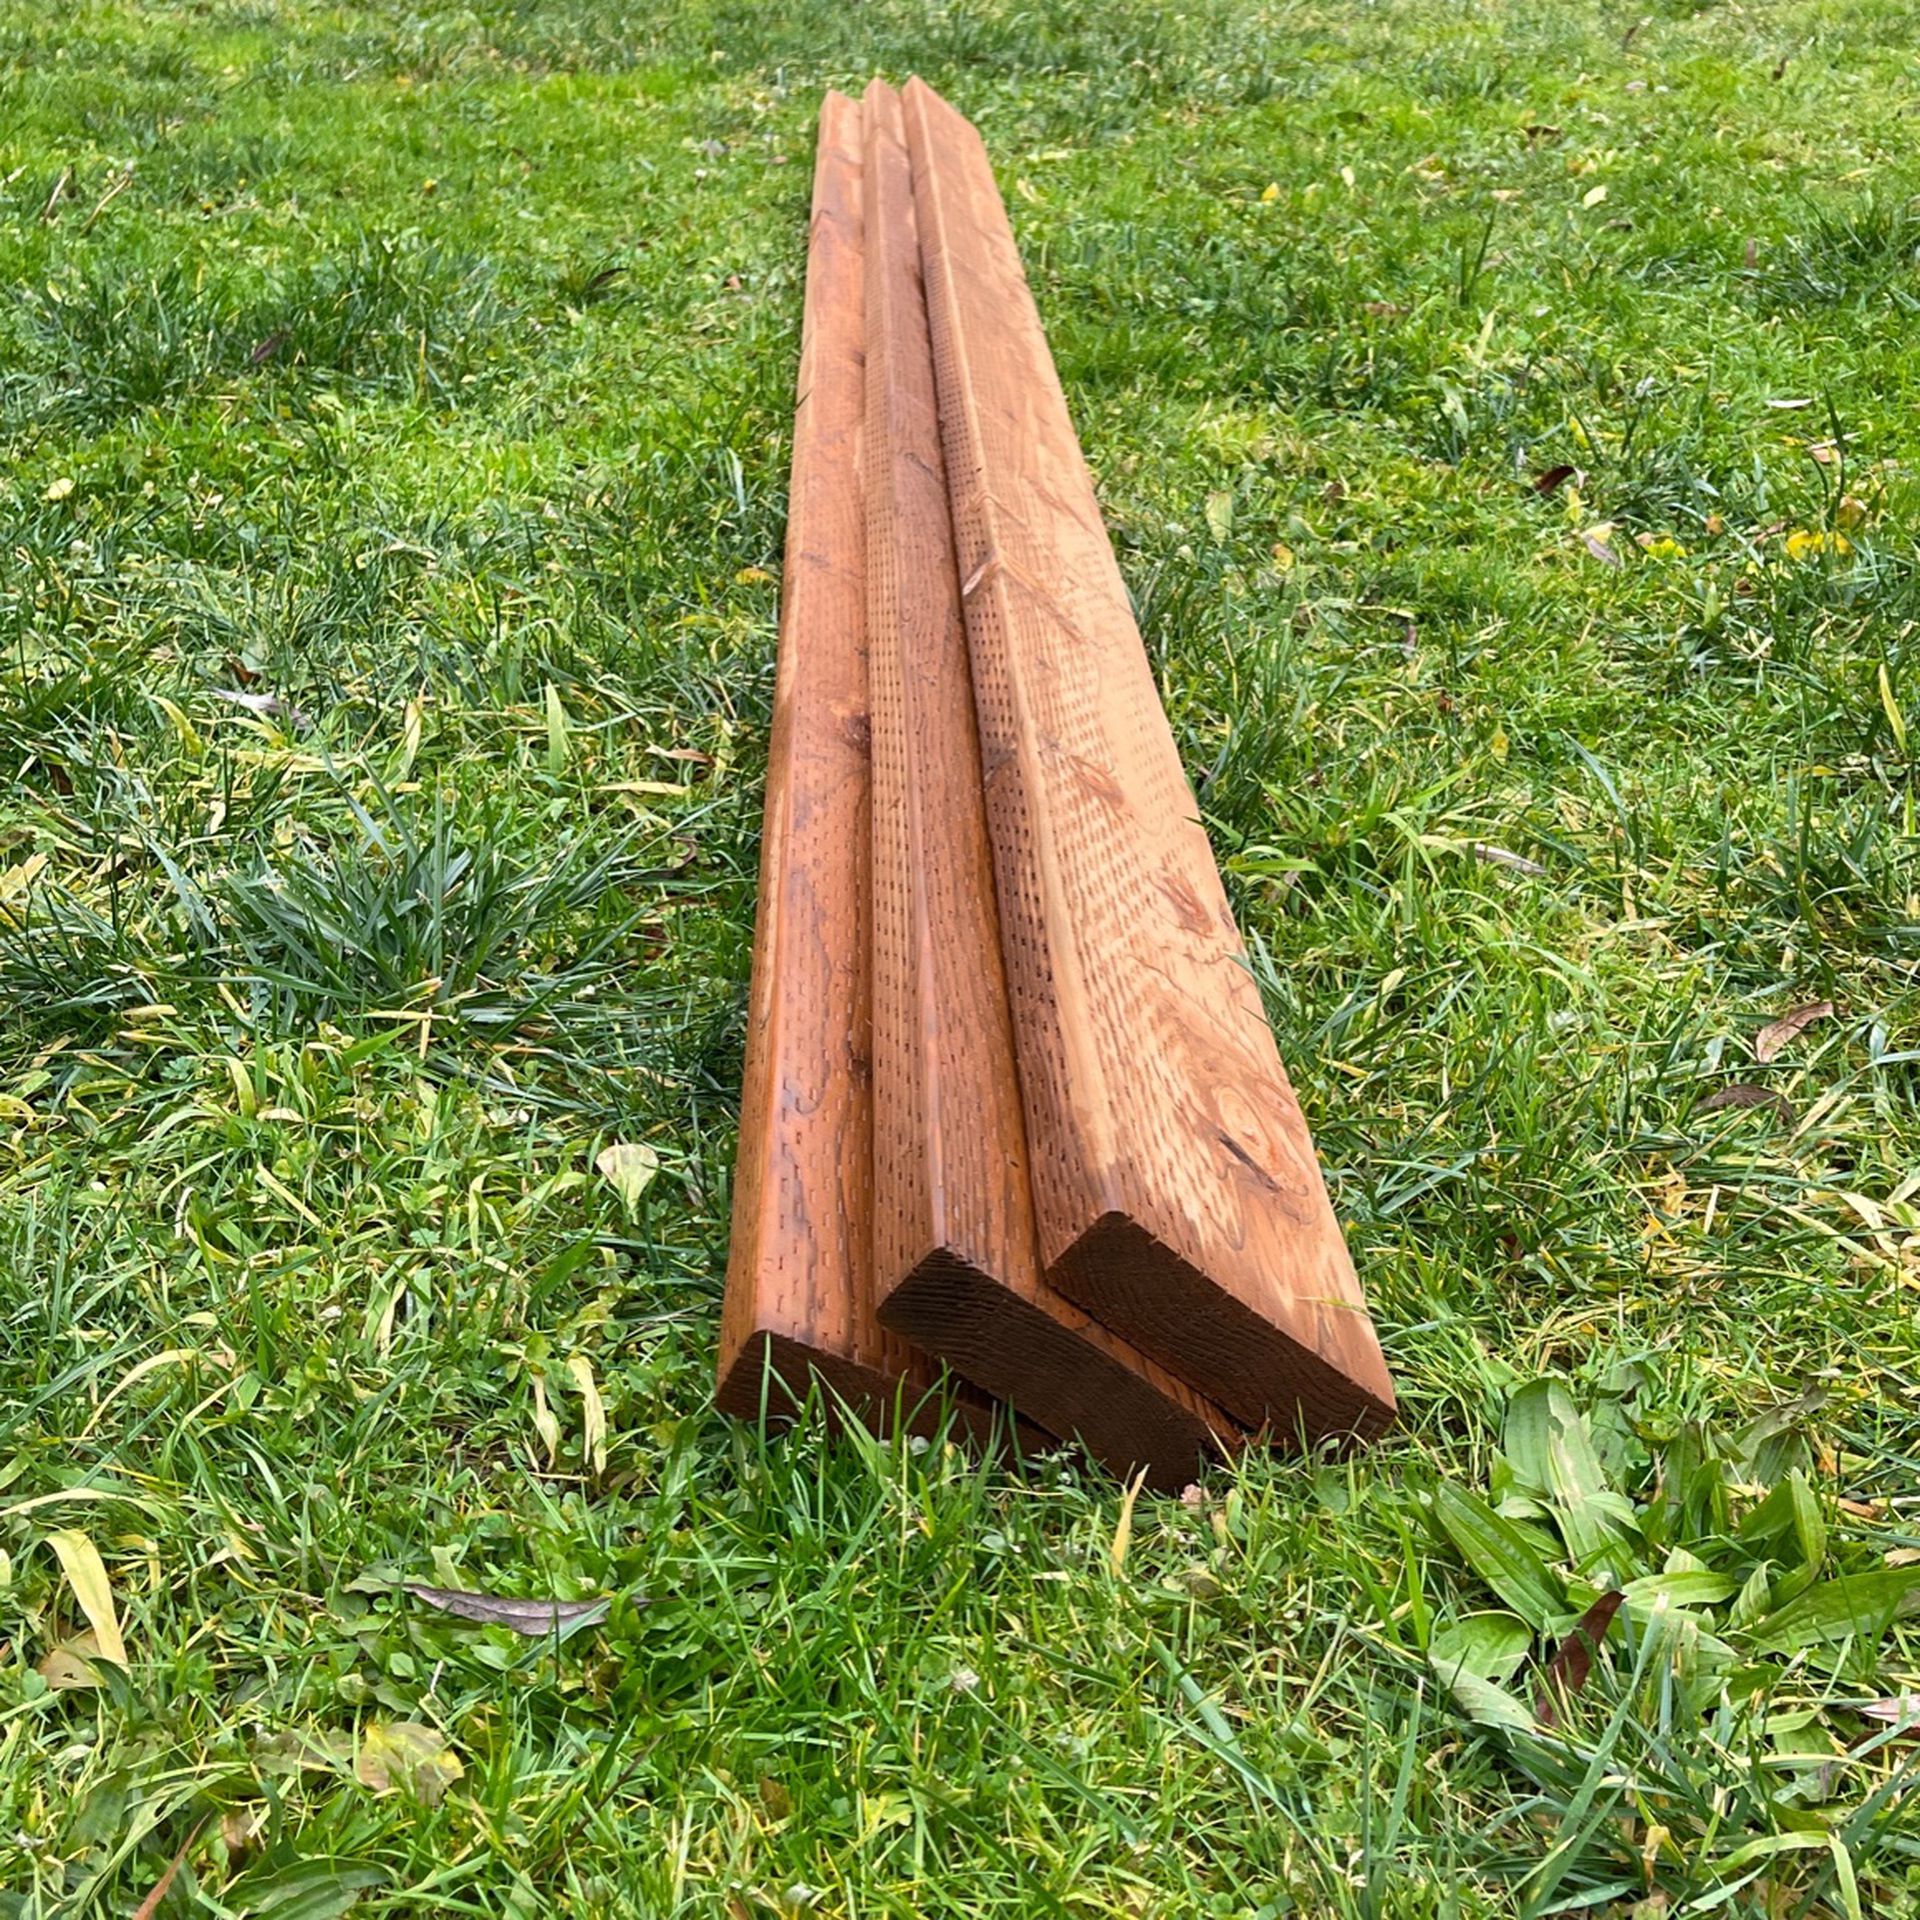 Pressure treated lumber 2x6x16